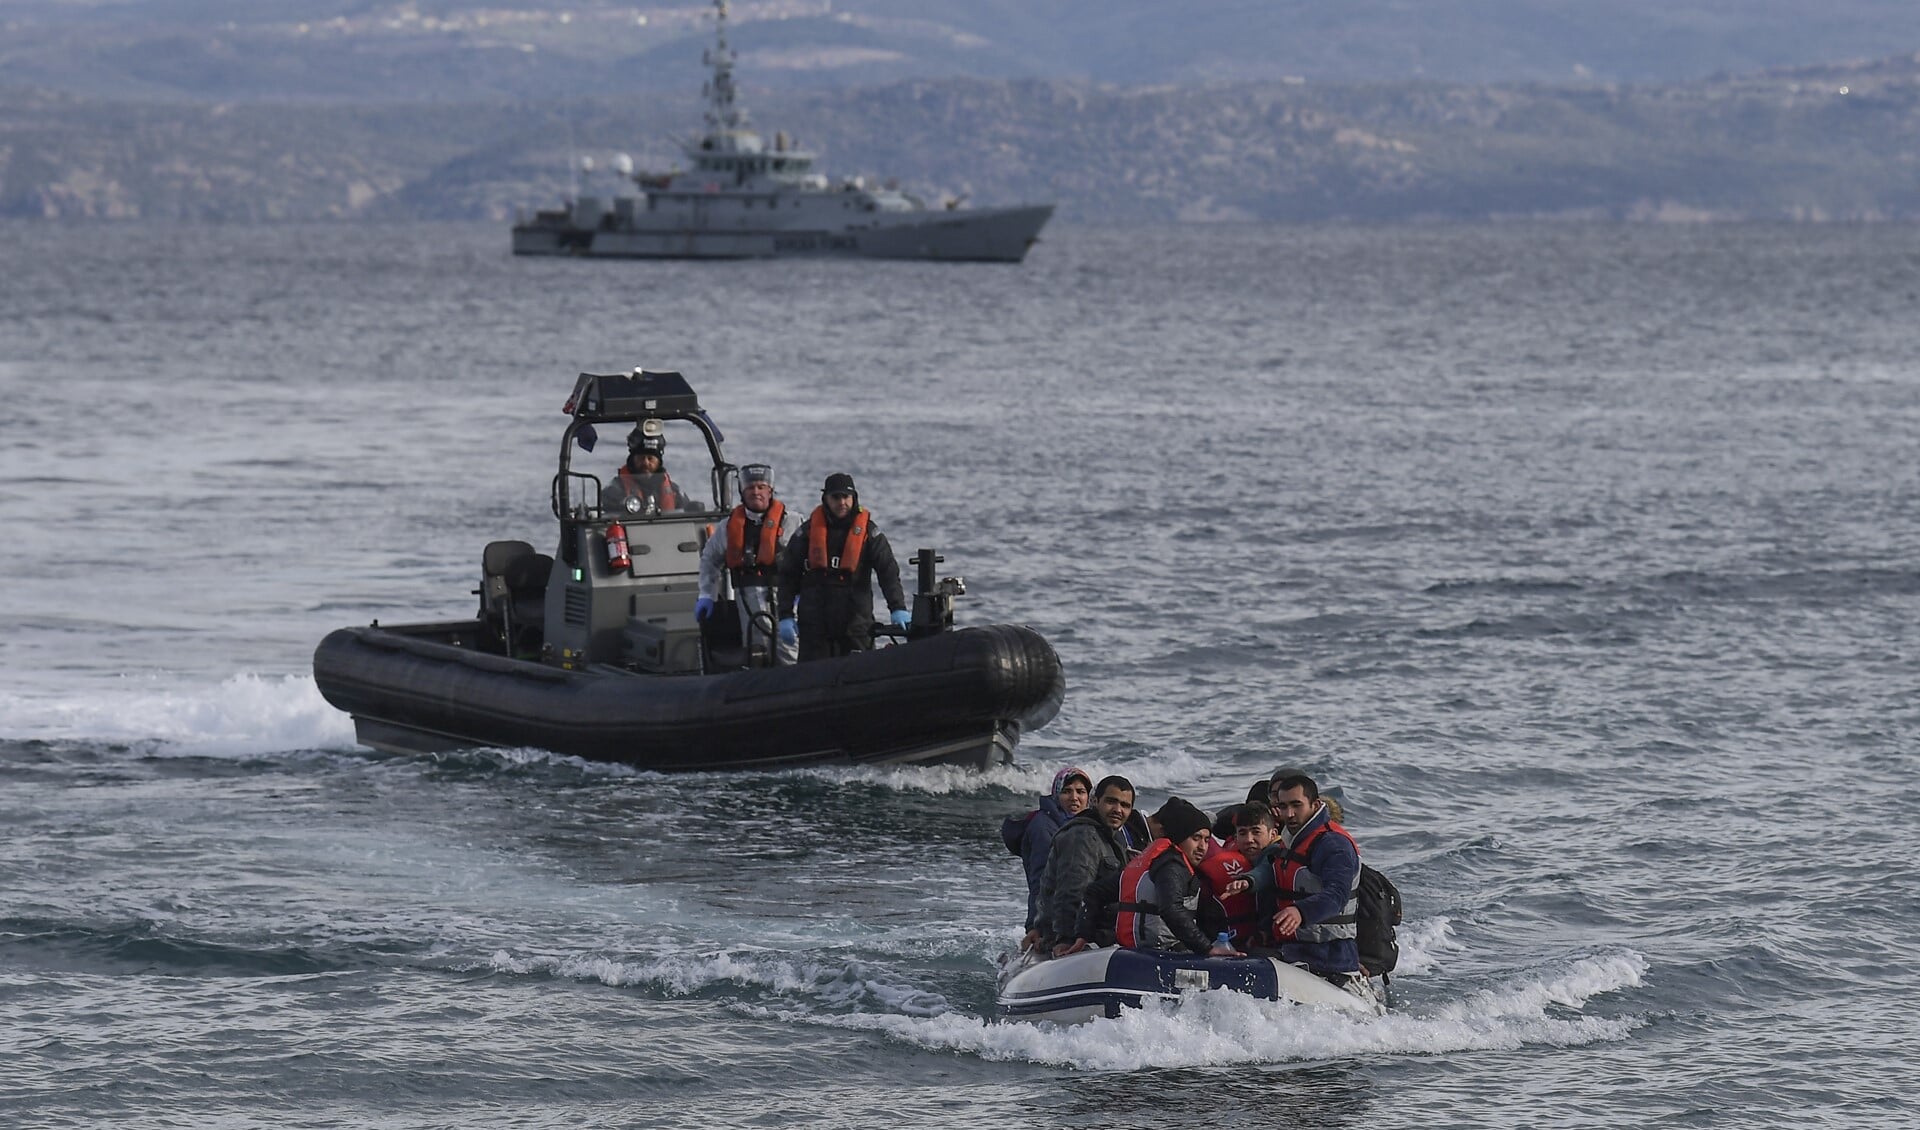 De populairste manier om de EU binnen te komen, blijft de route per boot over de Middellandse Zee. Op deze route werden vorig jaar meer dan 65.000 illegale migranten onderschept.